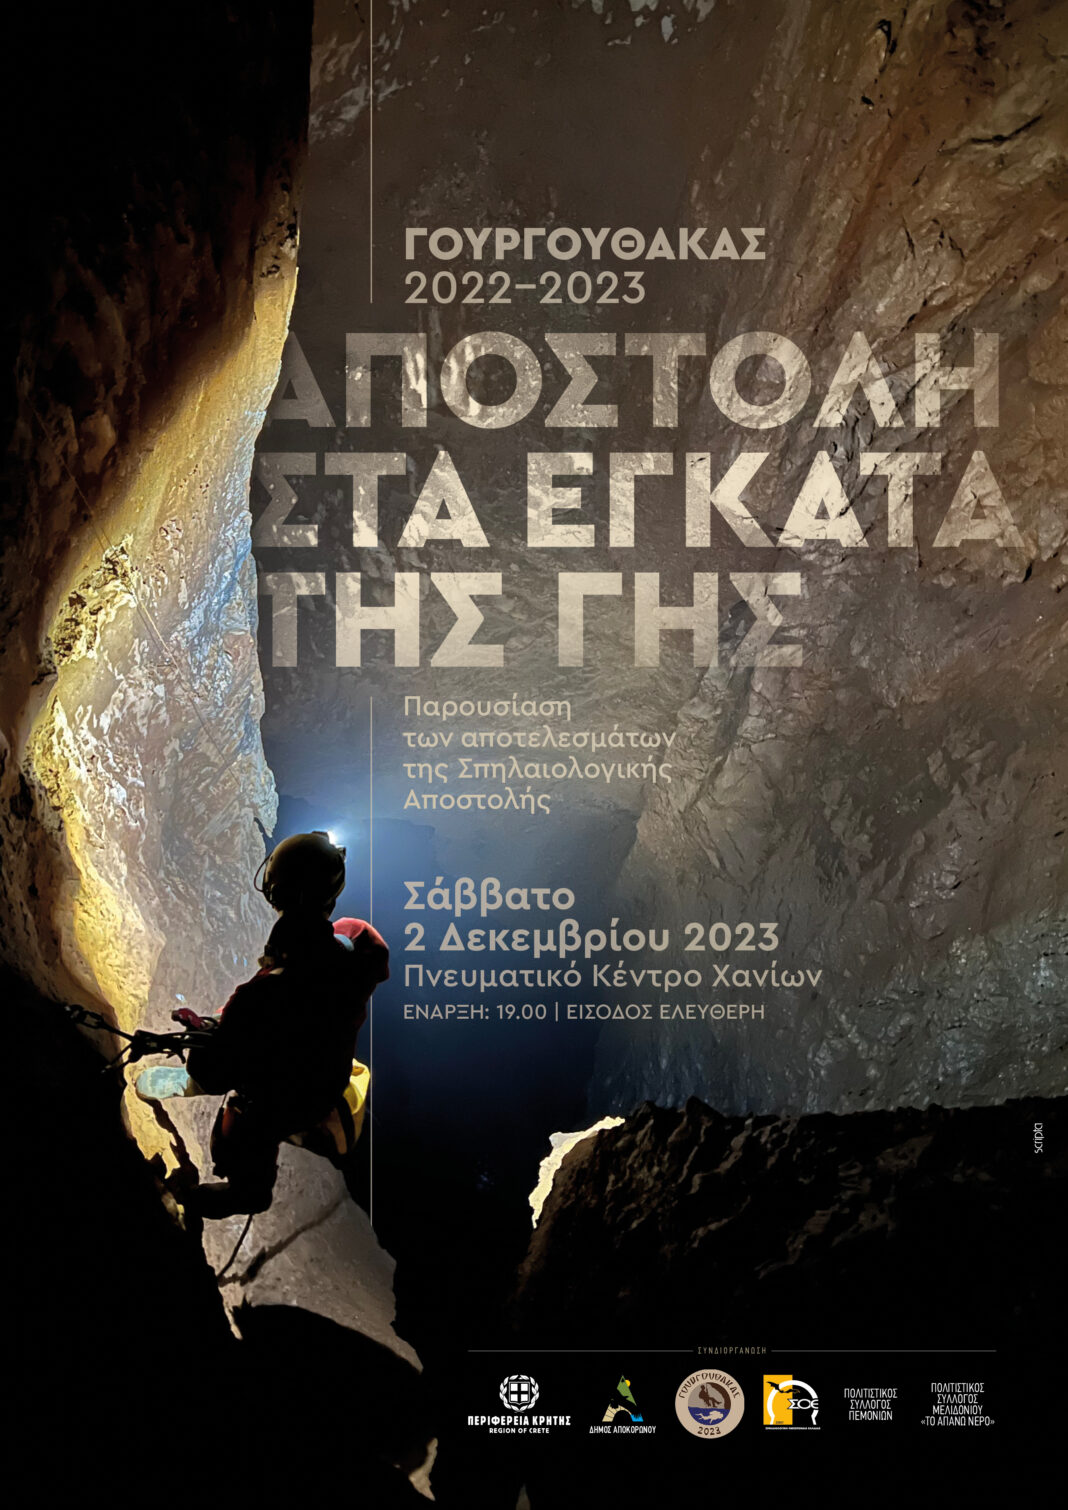 Παρουσιάζονται τα αποτελέσματα της σπηλαιολογικής αποστολής στο Γουργούθακα